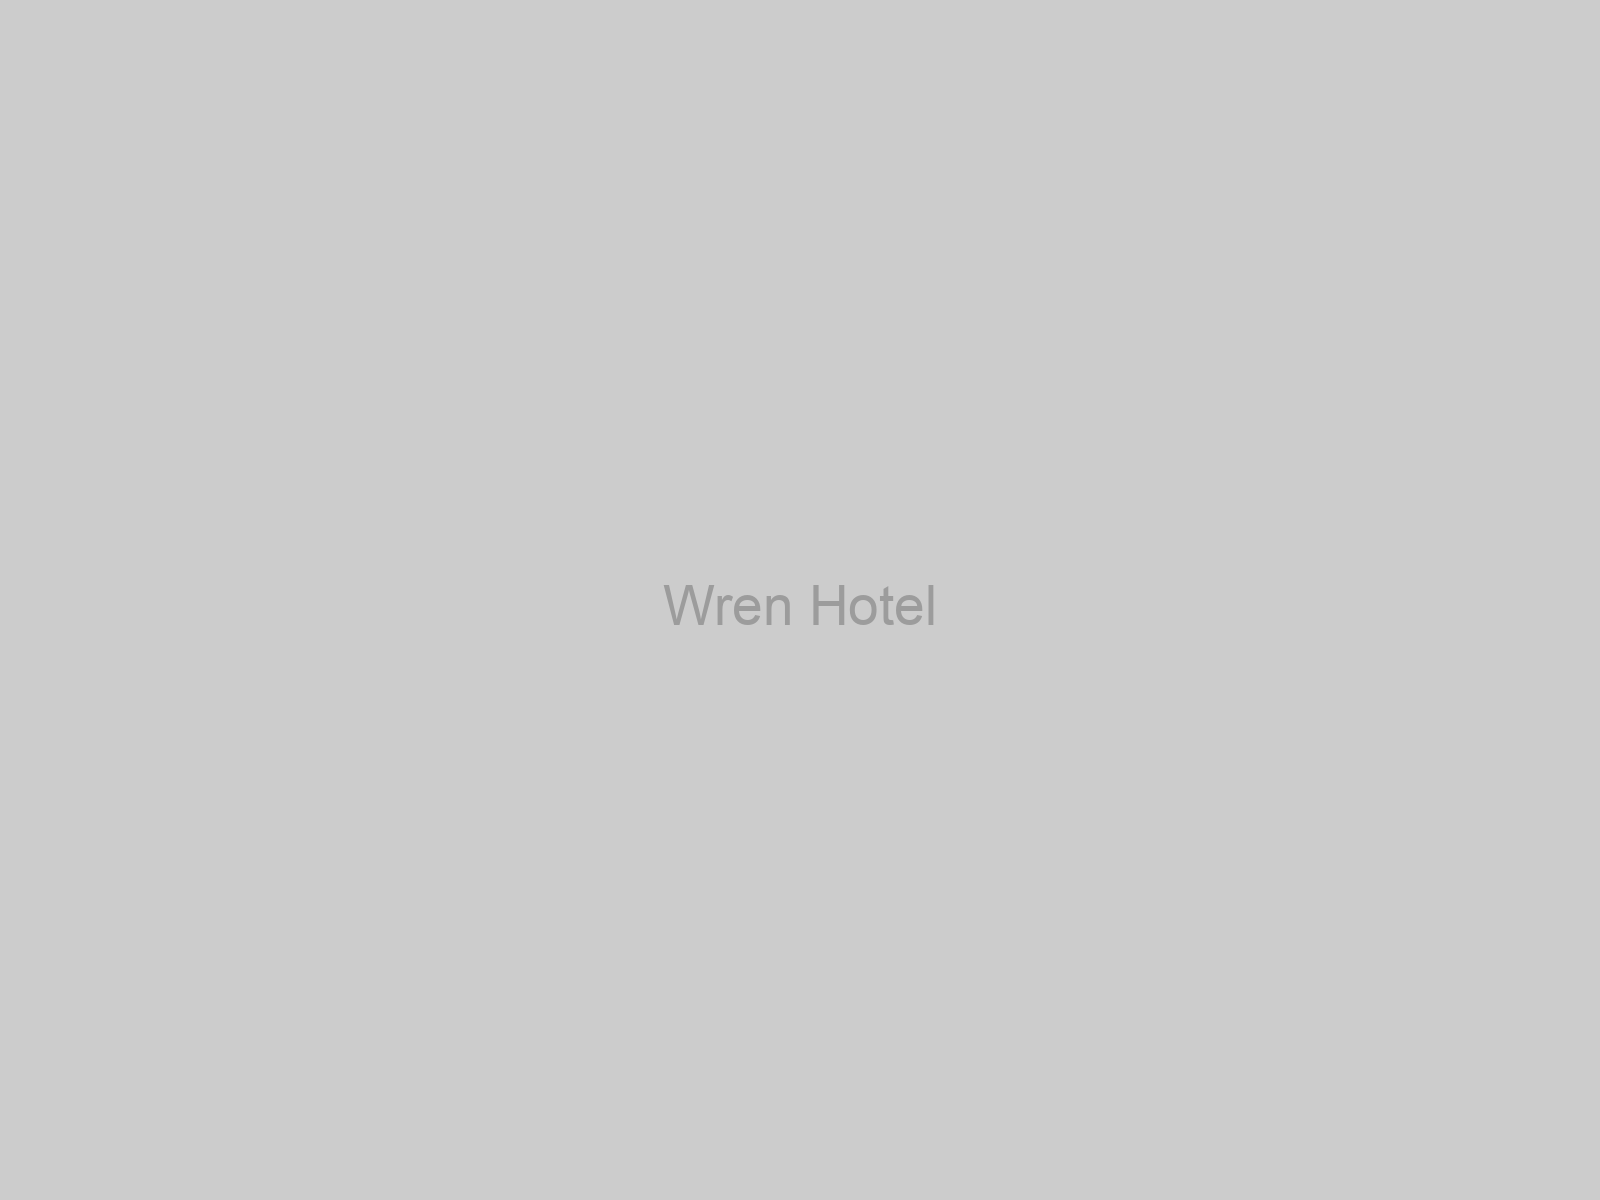 Wren Hotel